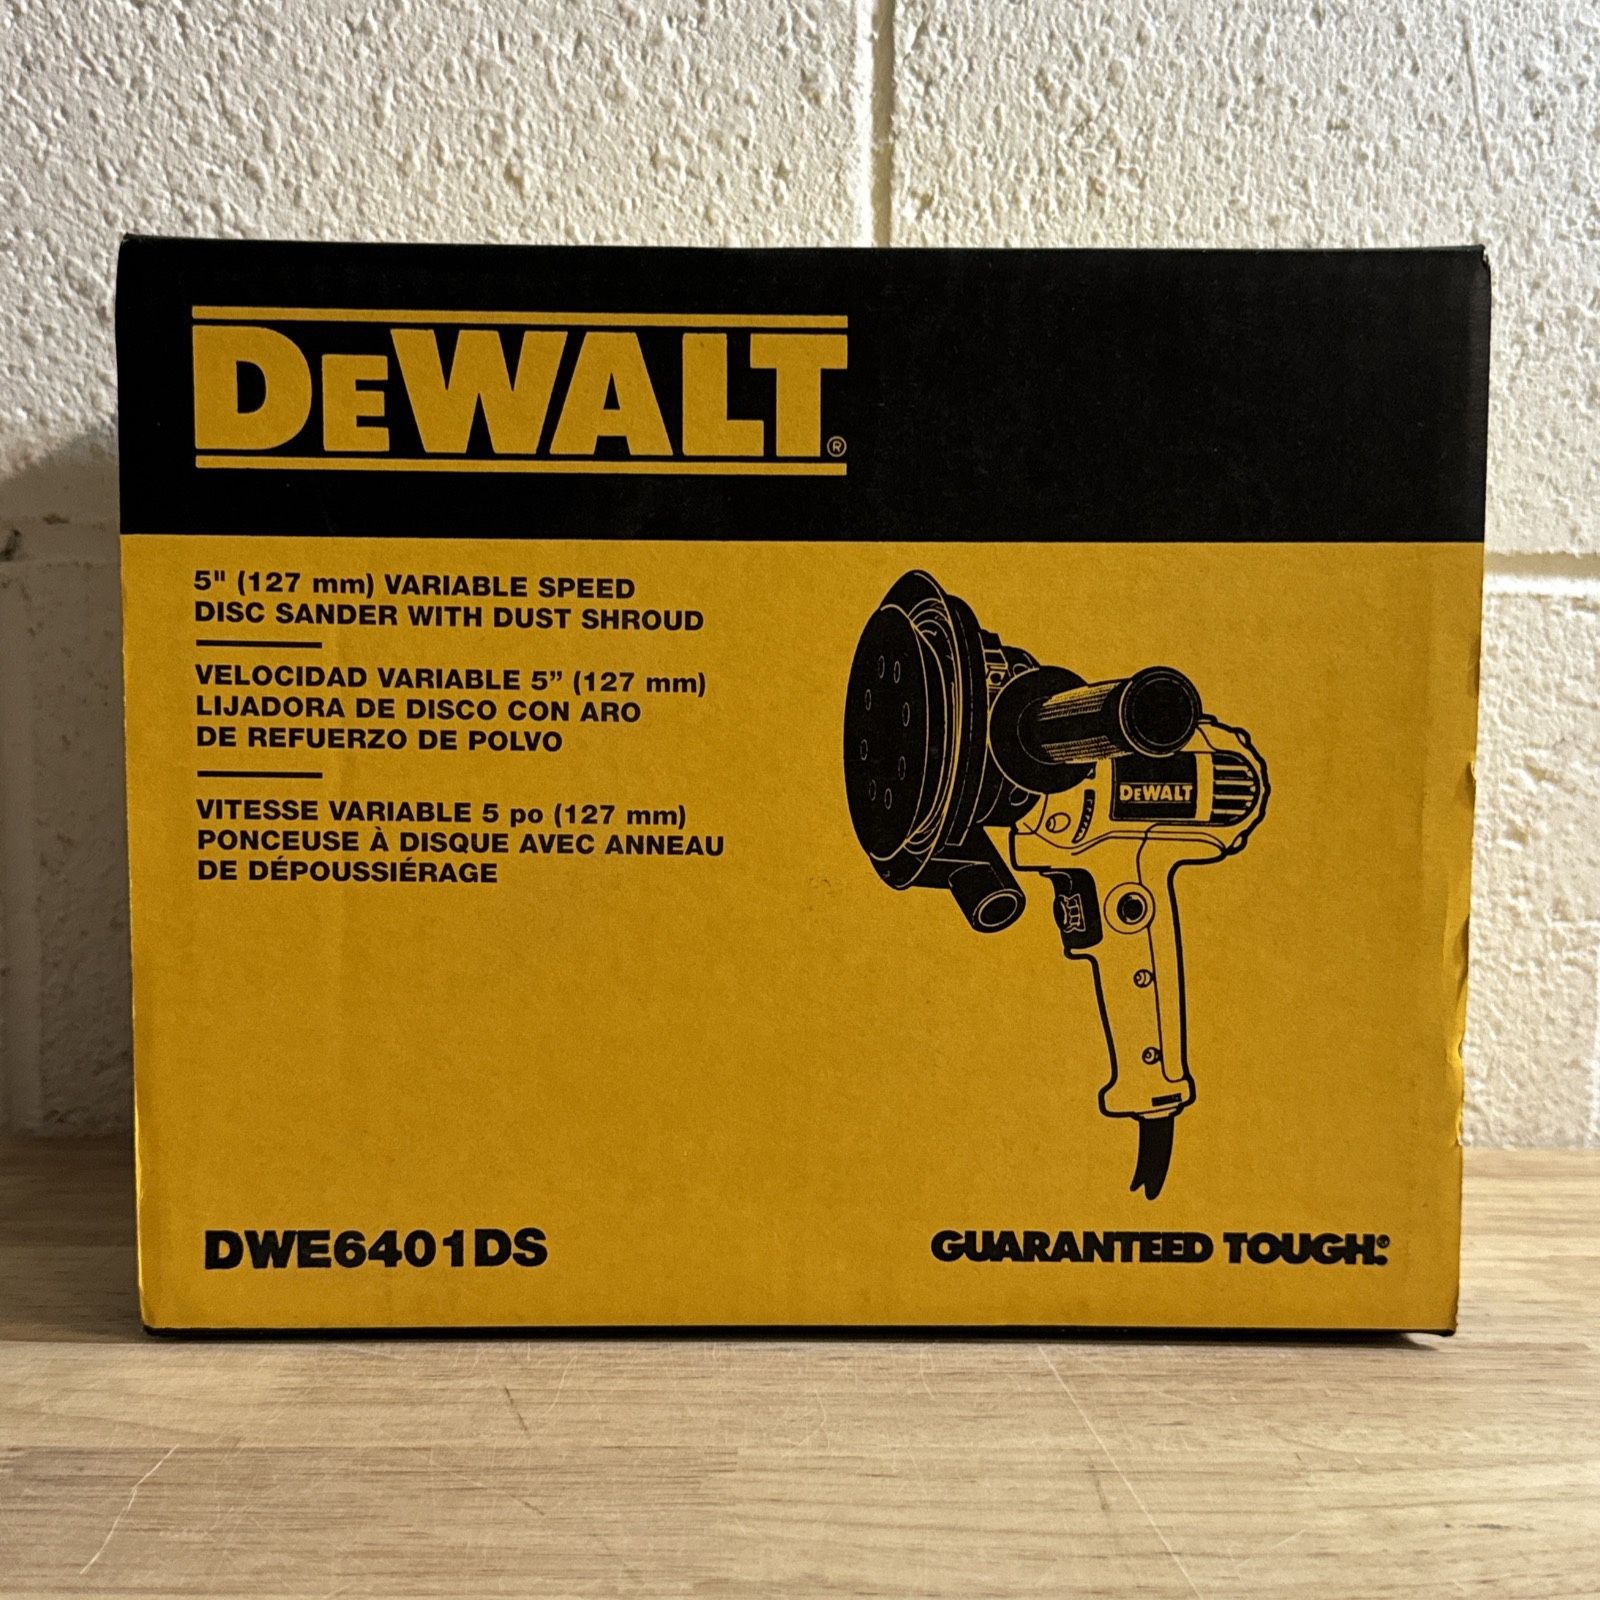 DEWALT DWE6401DS 120V 5”Variable Speed Disc Sander